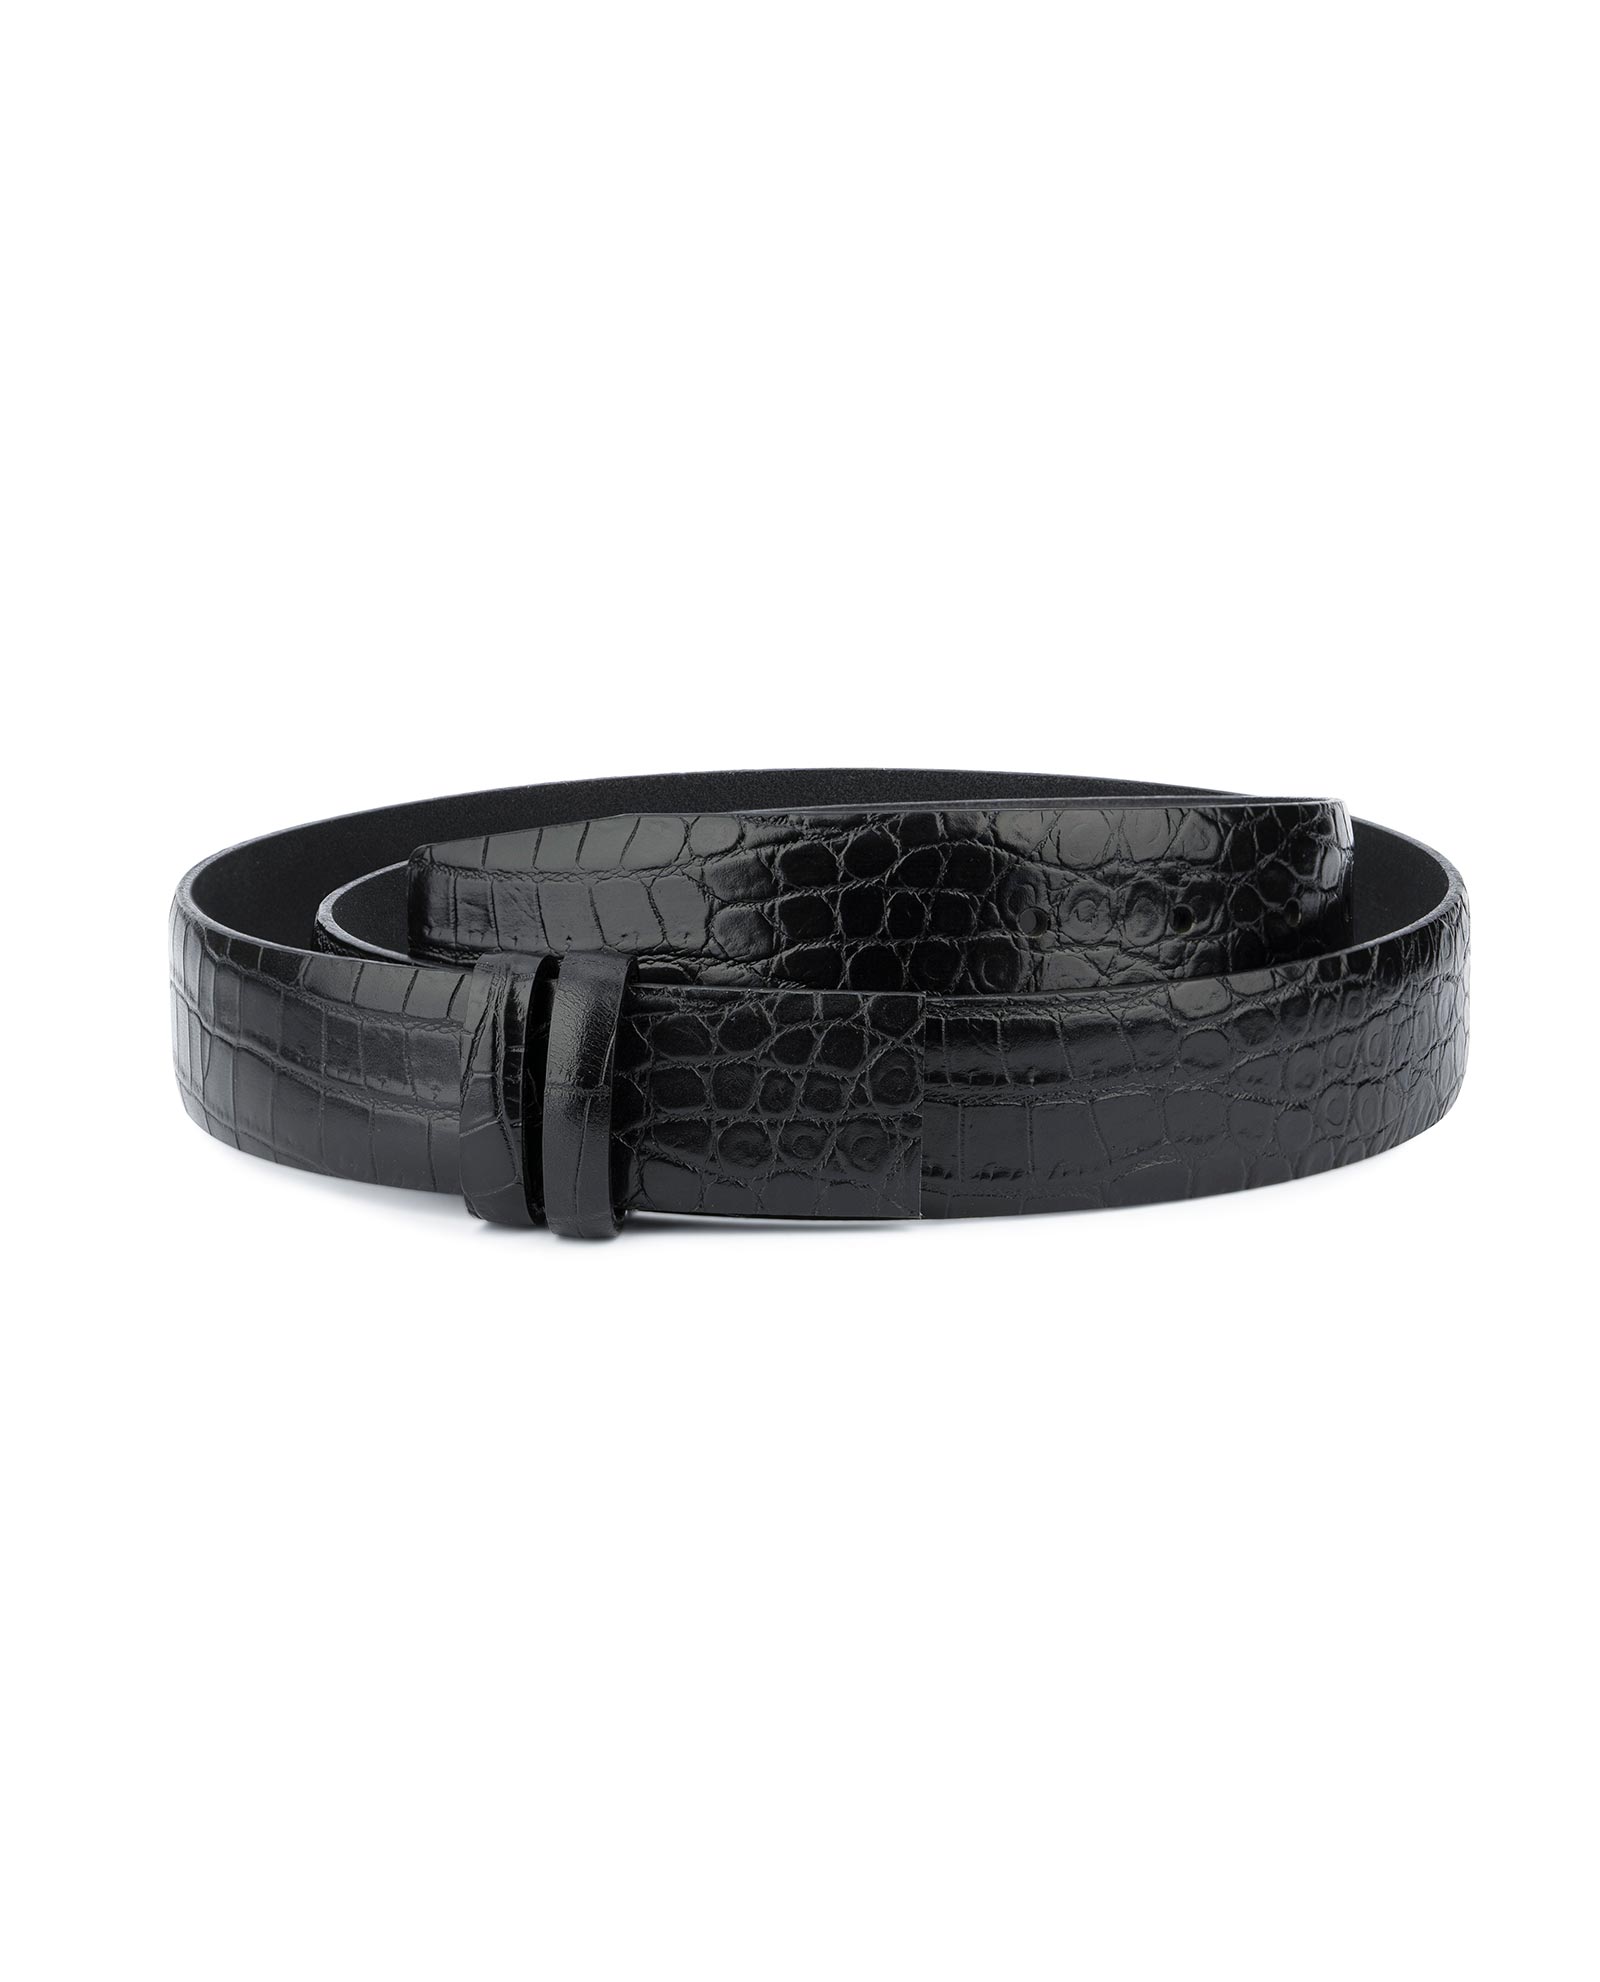 Buy Black Croco Leather Strap for Belt | Men's 1 3/8